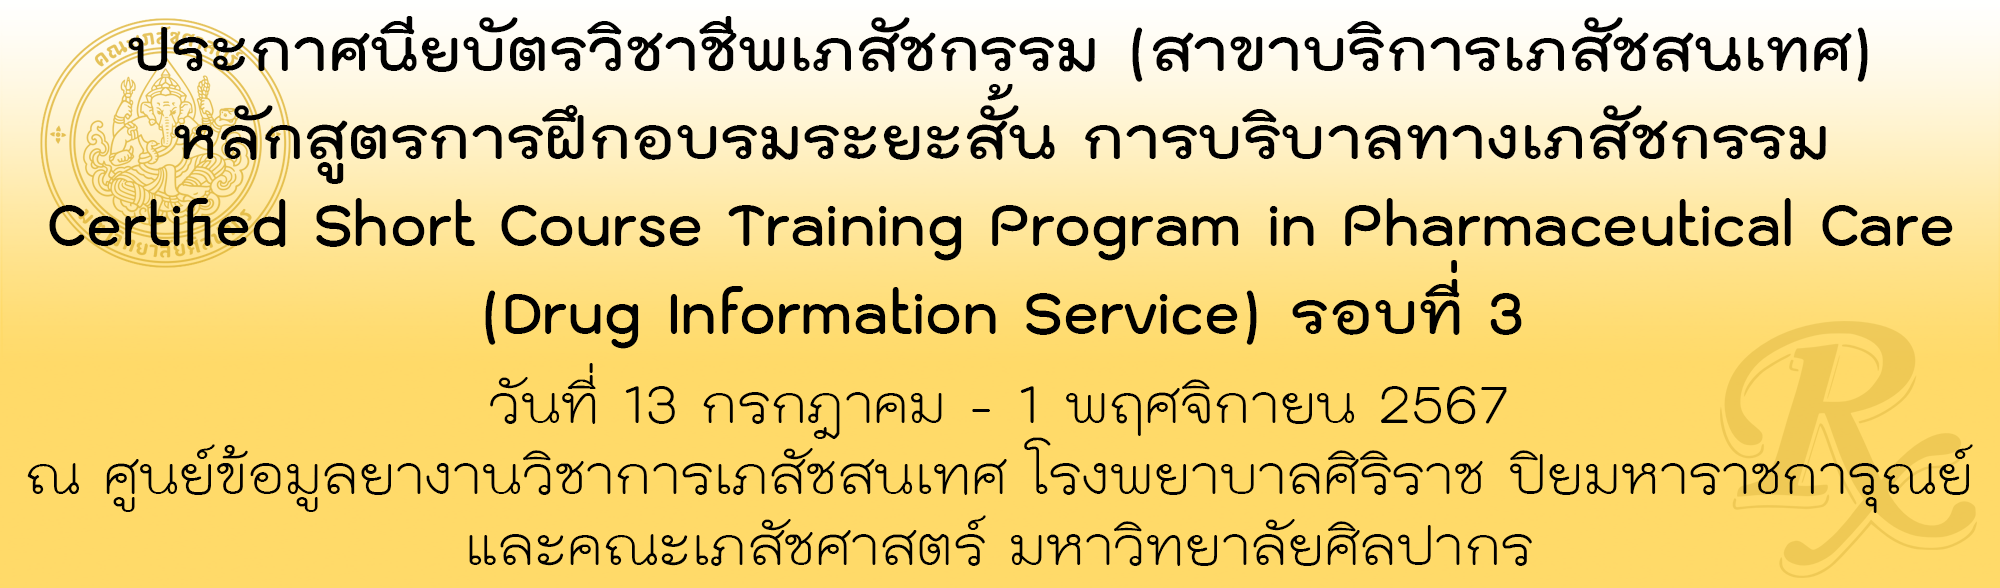 ประกาศนียบัตรวิชาชีพเภสัชกรรม(สาขาบริการเภสัชสนเทศ) หลักสูตรการฝึกอบรมระยะสั้นการบริบาลทางเภสัชกรรม Certified Short Course Training Program in Pharmaceutical Care (Drug Information Service) รอบที่ 3